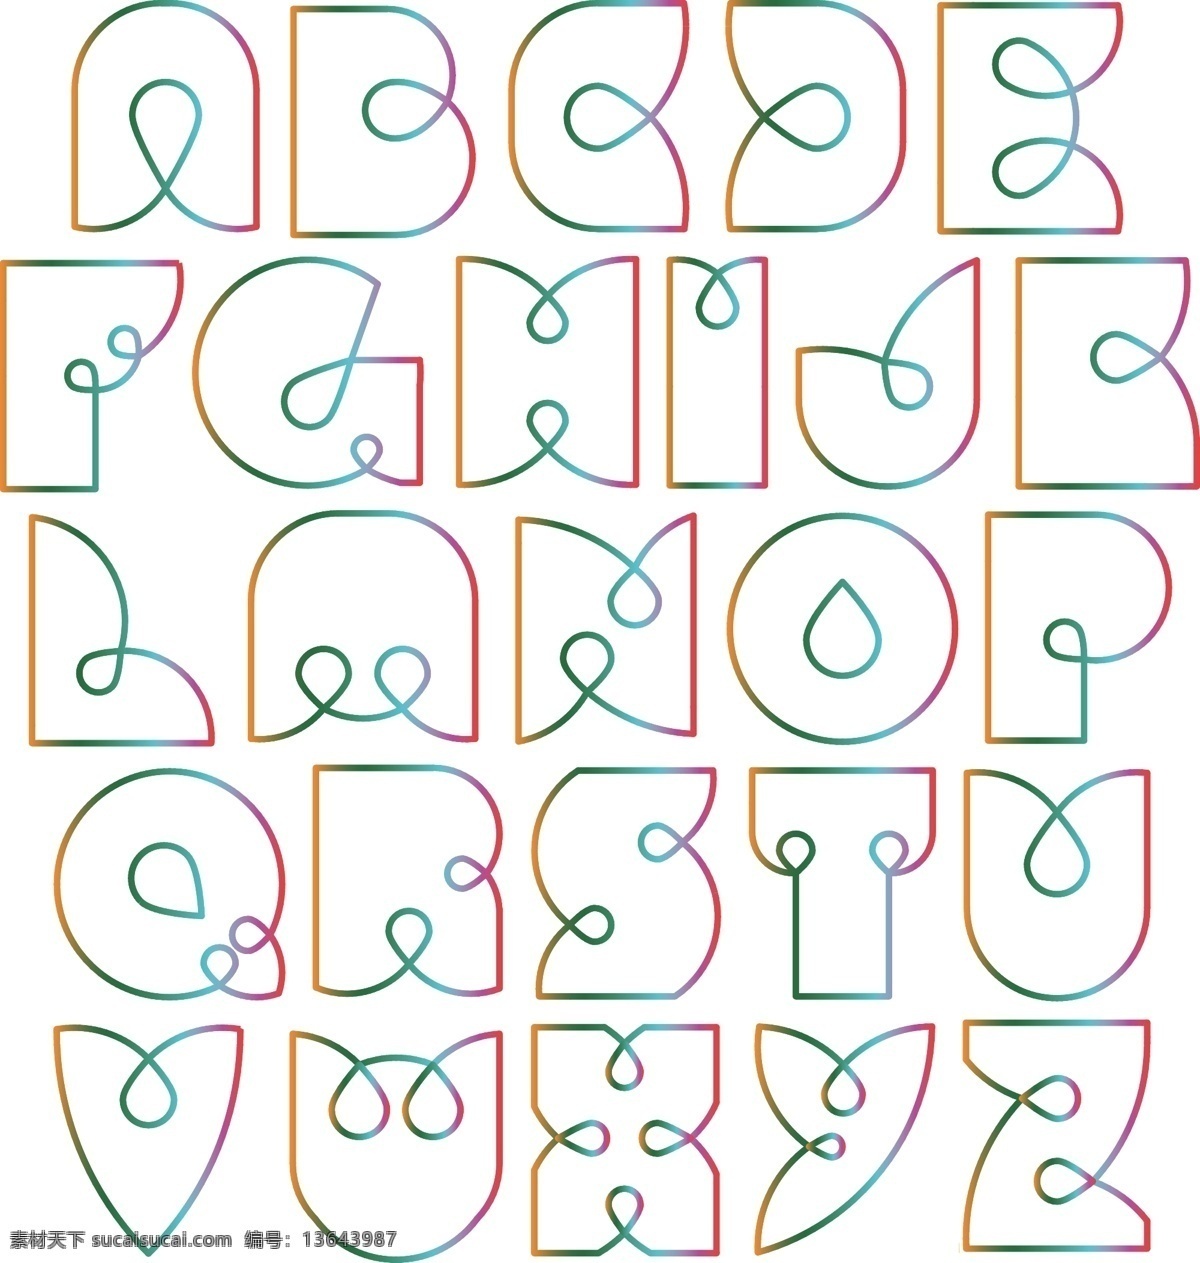 大写字母 字母 矢量字母 卡通字母 手绘字母 线条字母 线描字母 字母插画 创意字母 艺术字母 时尚字母 简约字母 简洁字母 数字字母 标志图标 其他图标